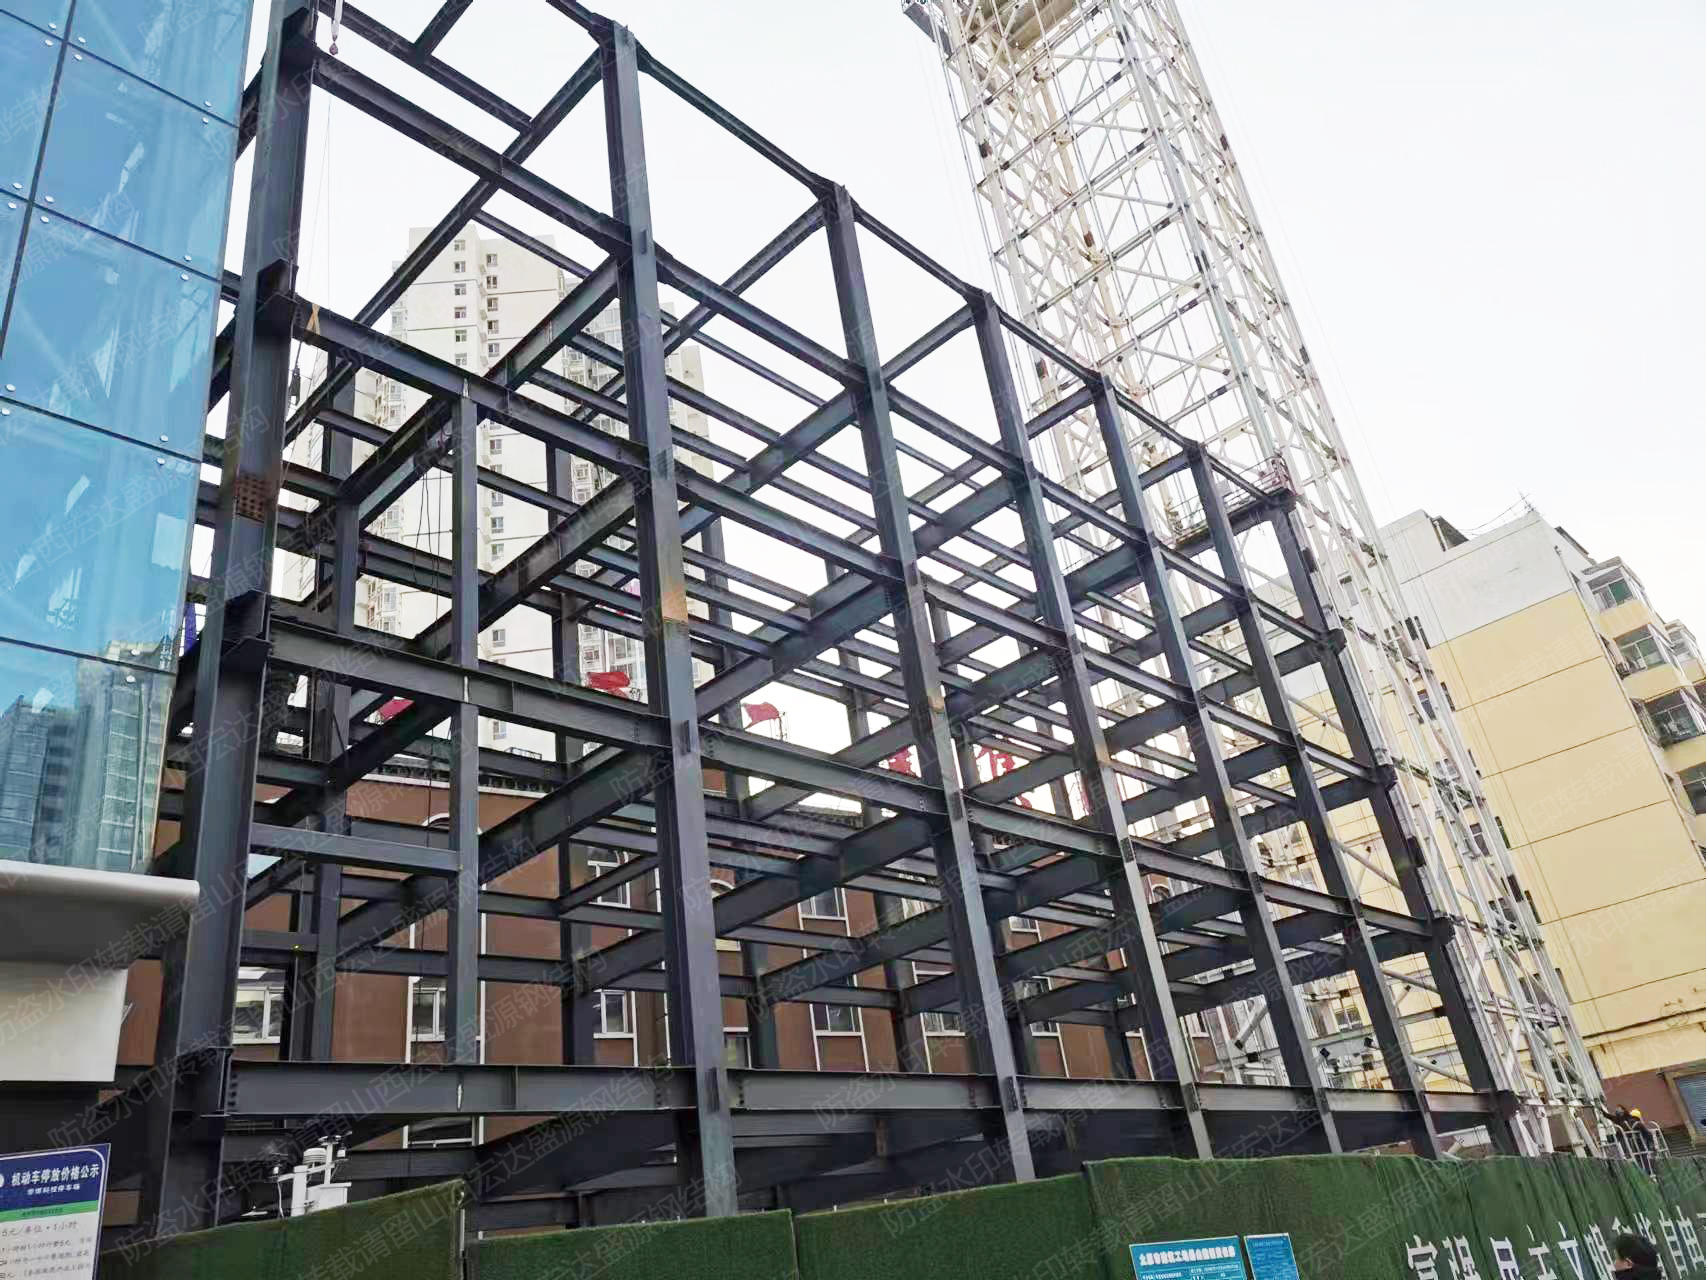 2020年12月建设山西桥东街银建五层钢结构办公楼